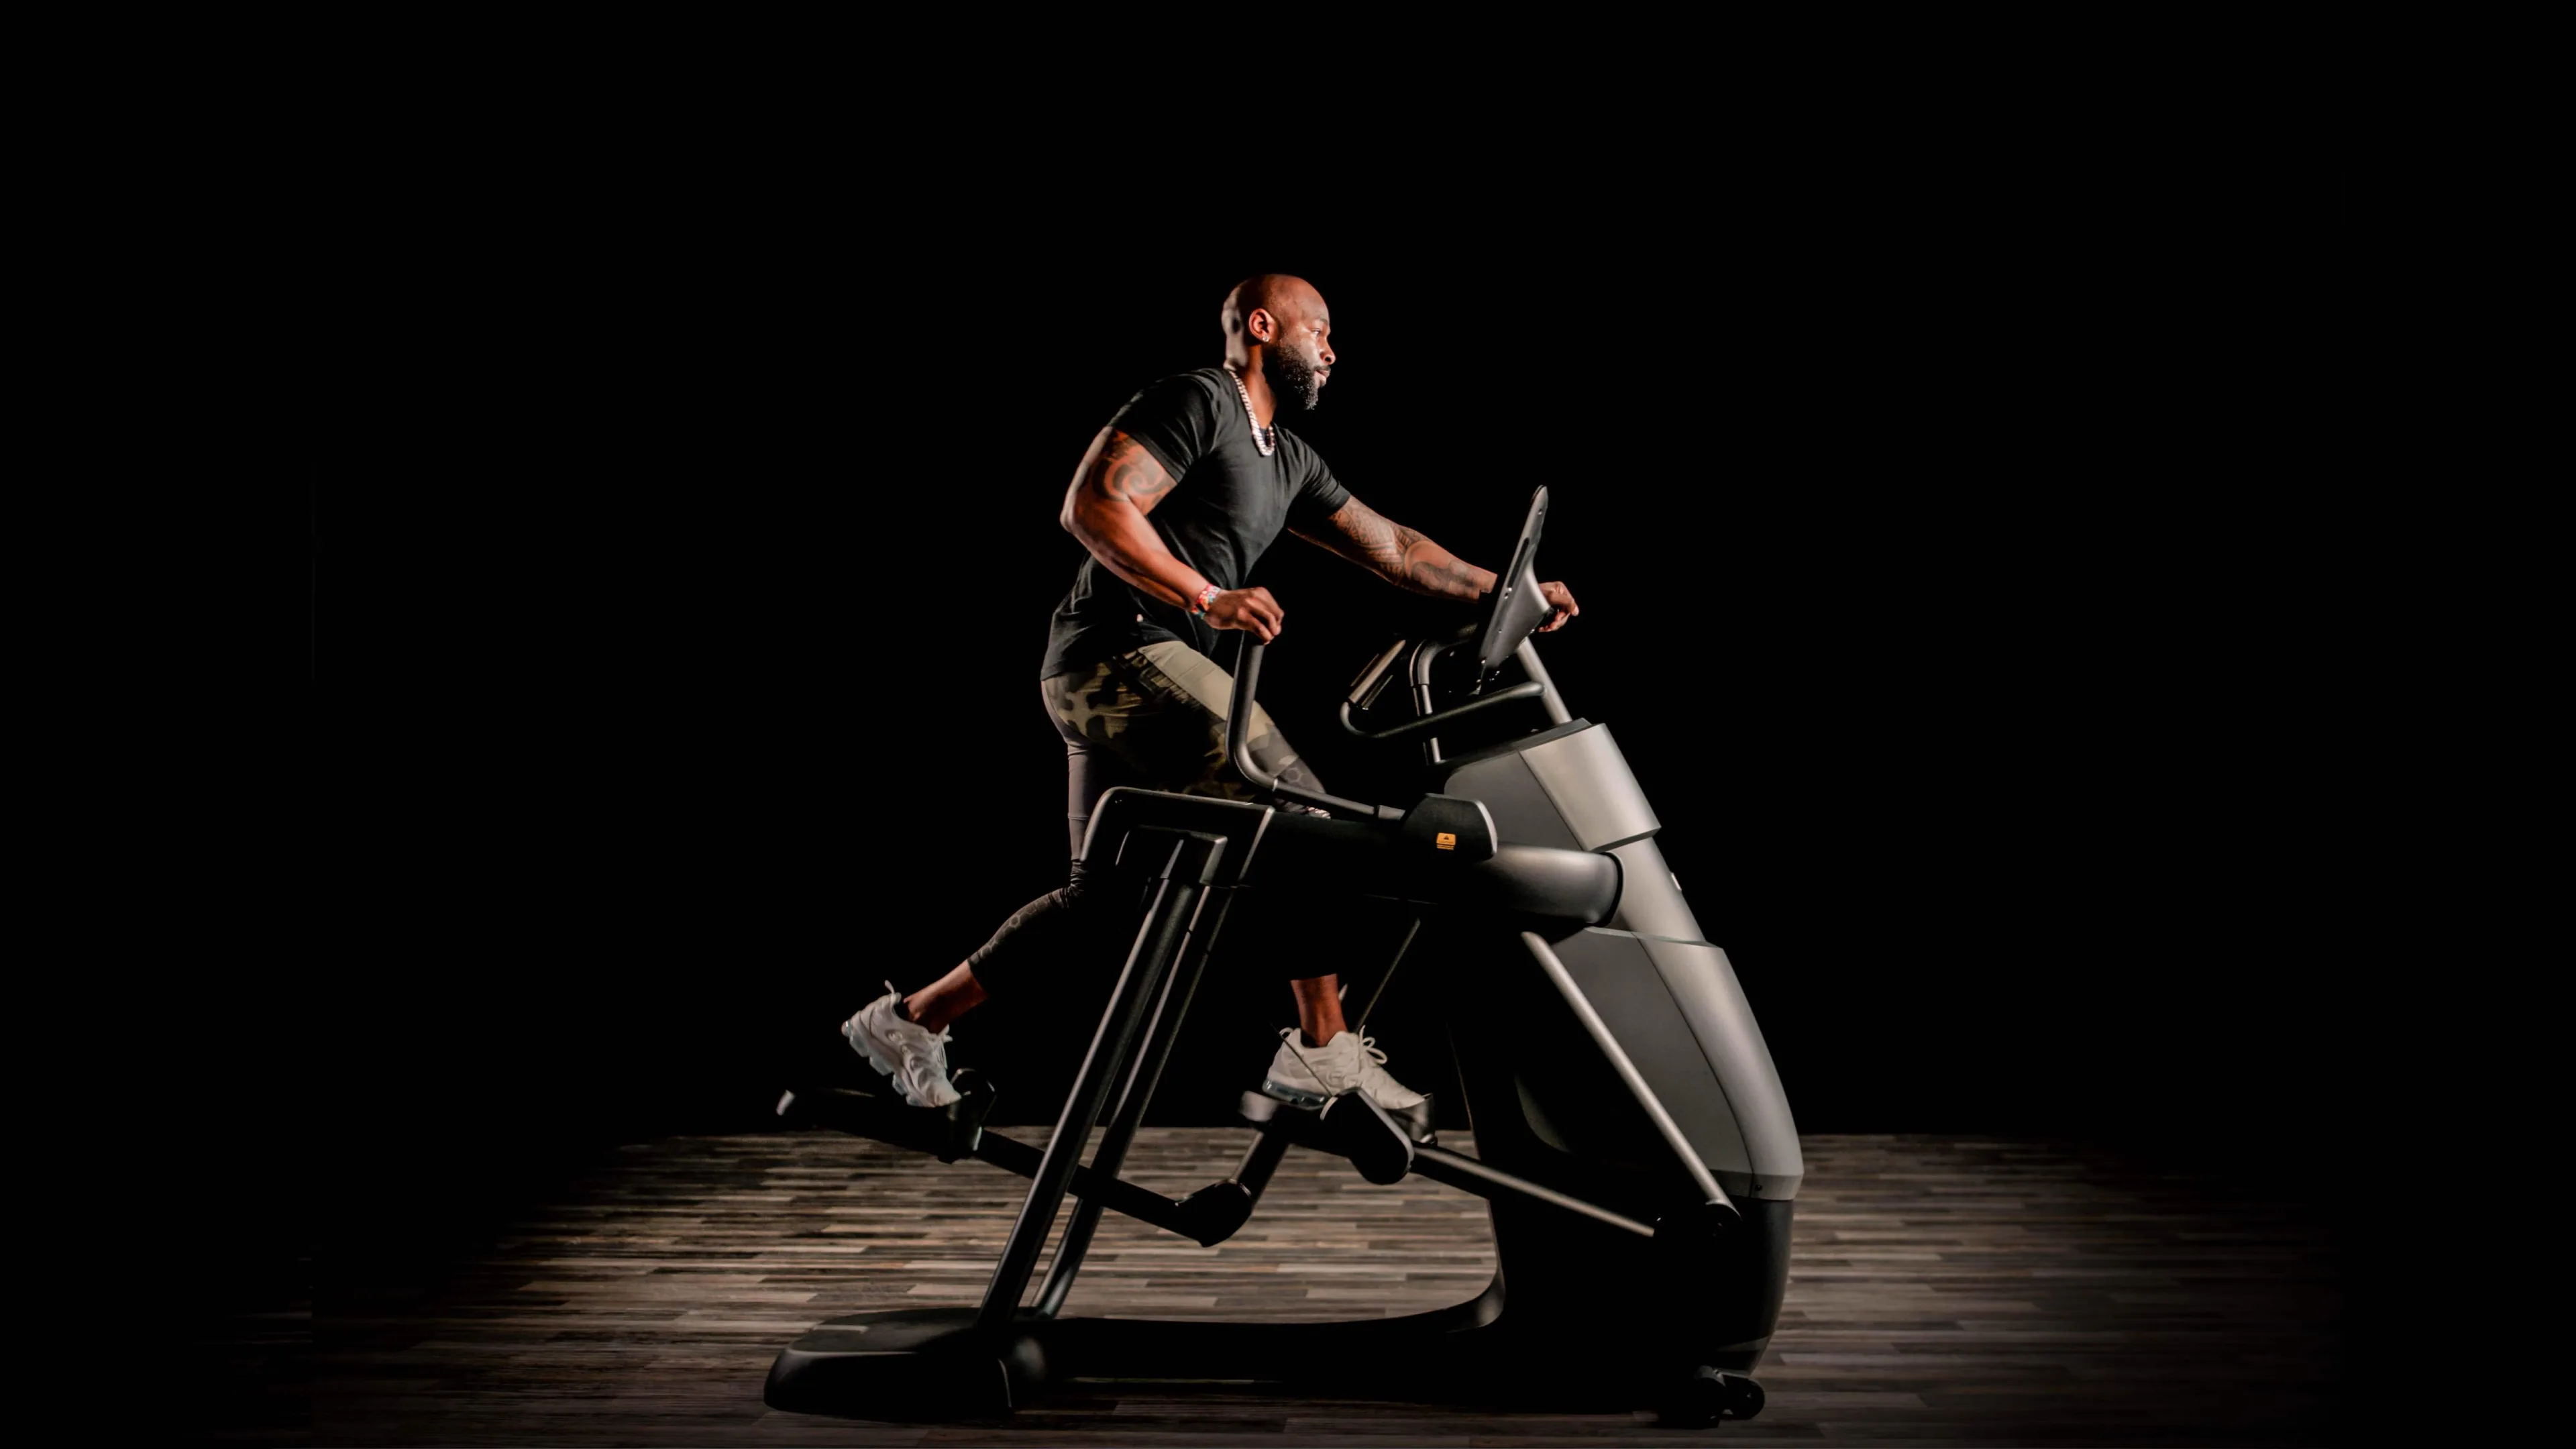 Precor Adaptive Motion Trainer